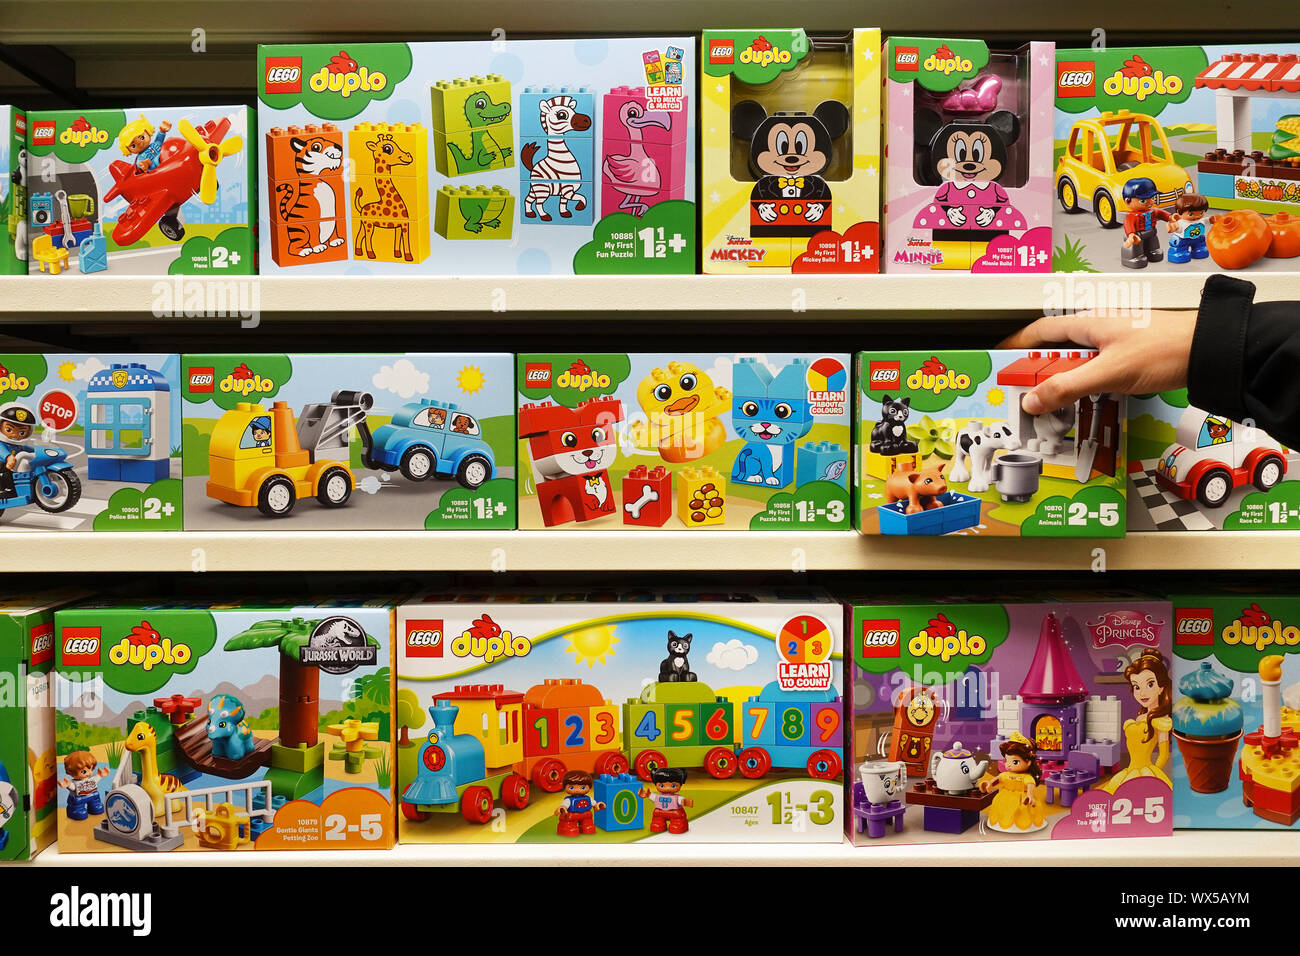 Les boîtes de Lego Duplo dans un magasin de jouets Banque D'Images